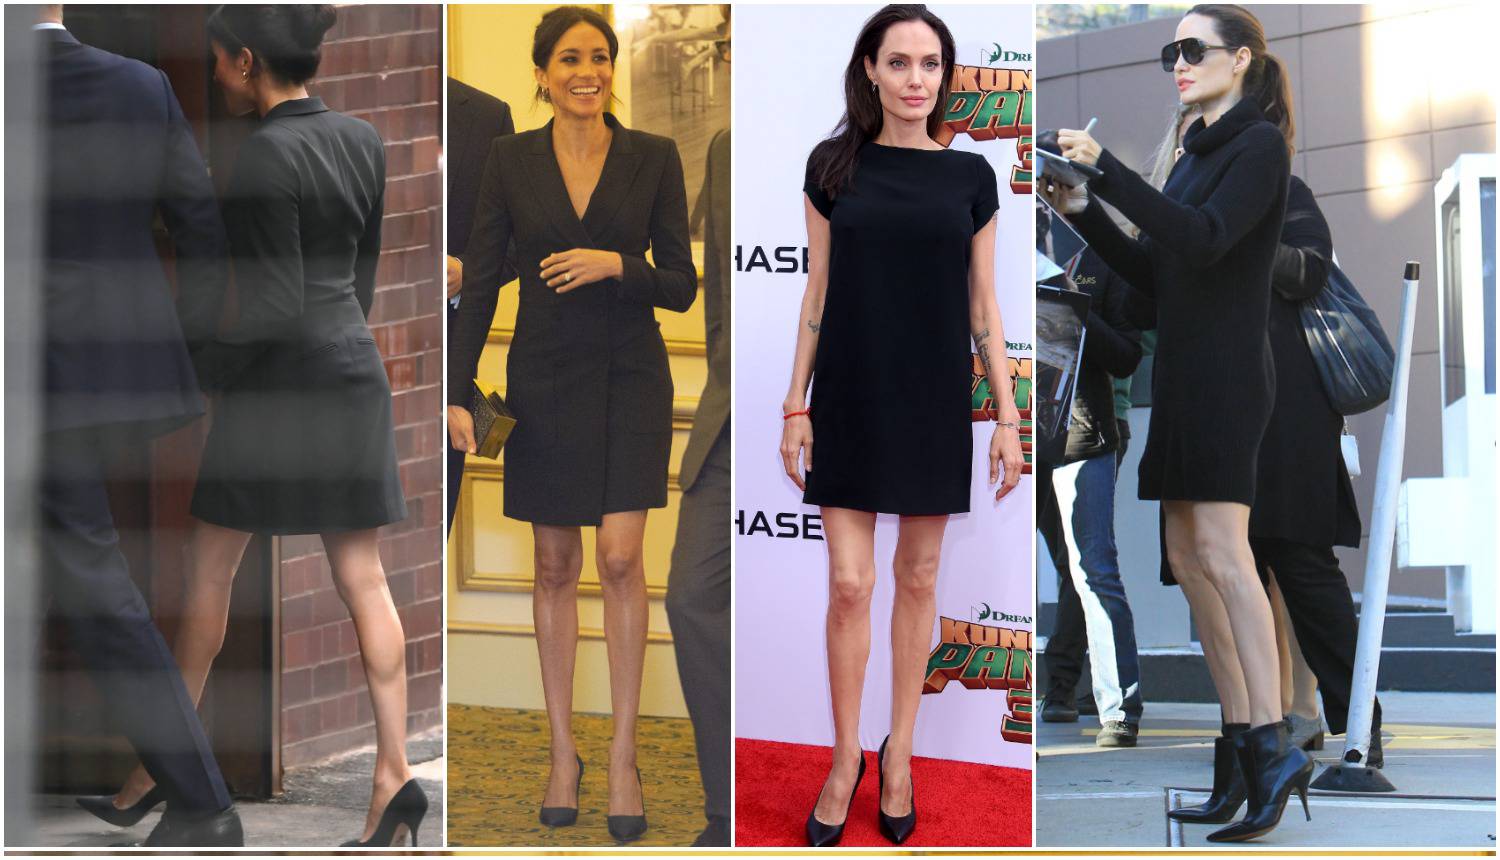 'Ima premršave noge': Meghan su usporedili s Angelinom Jolie